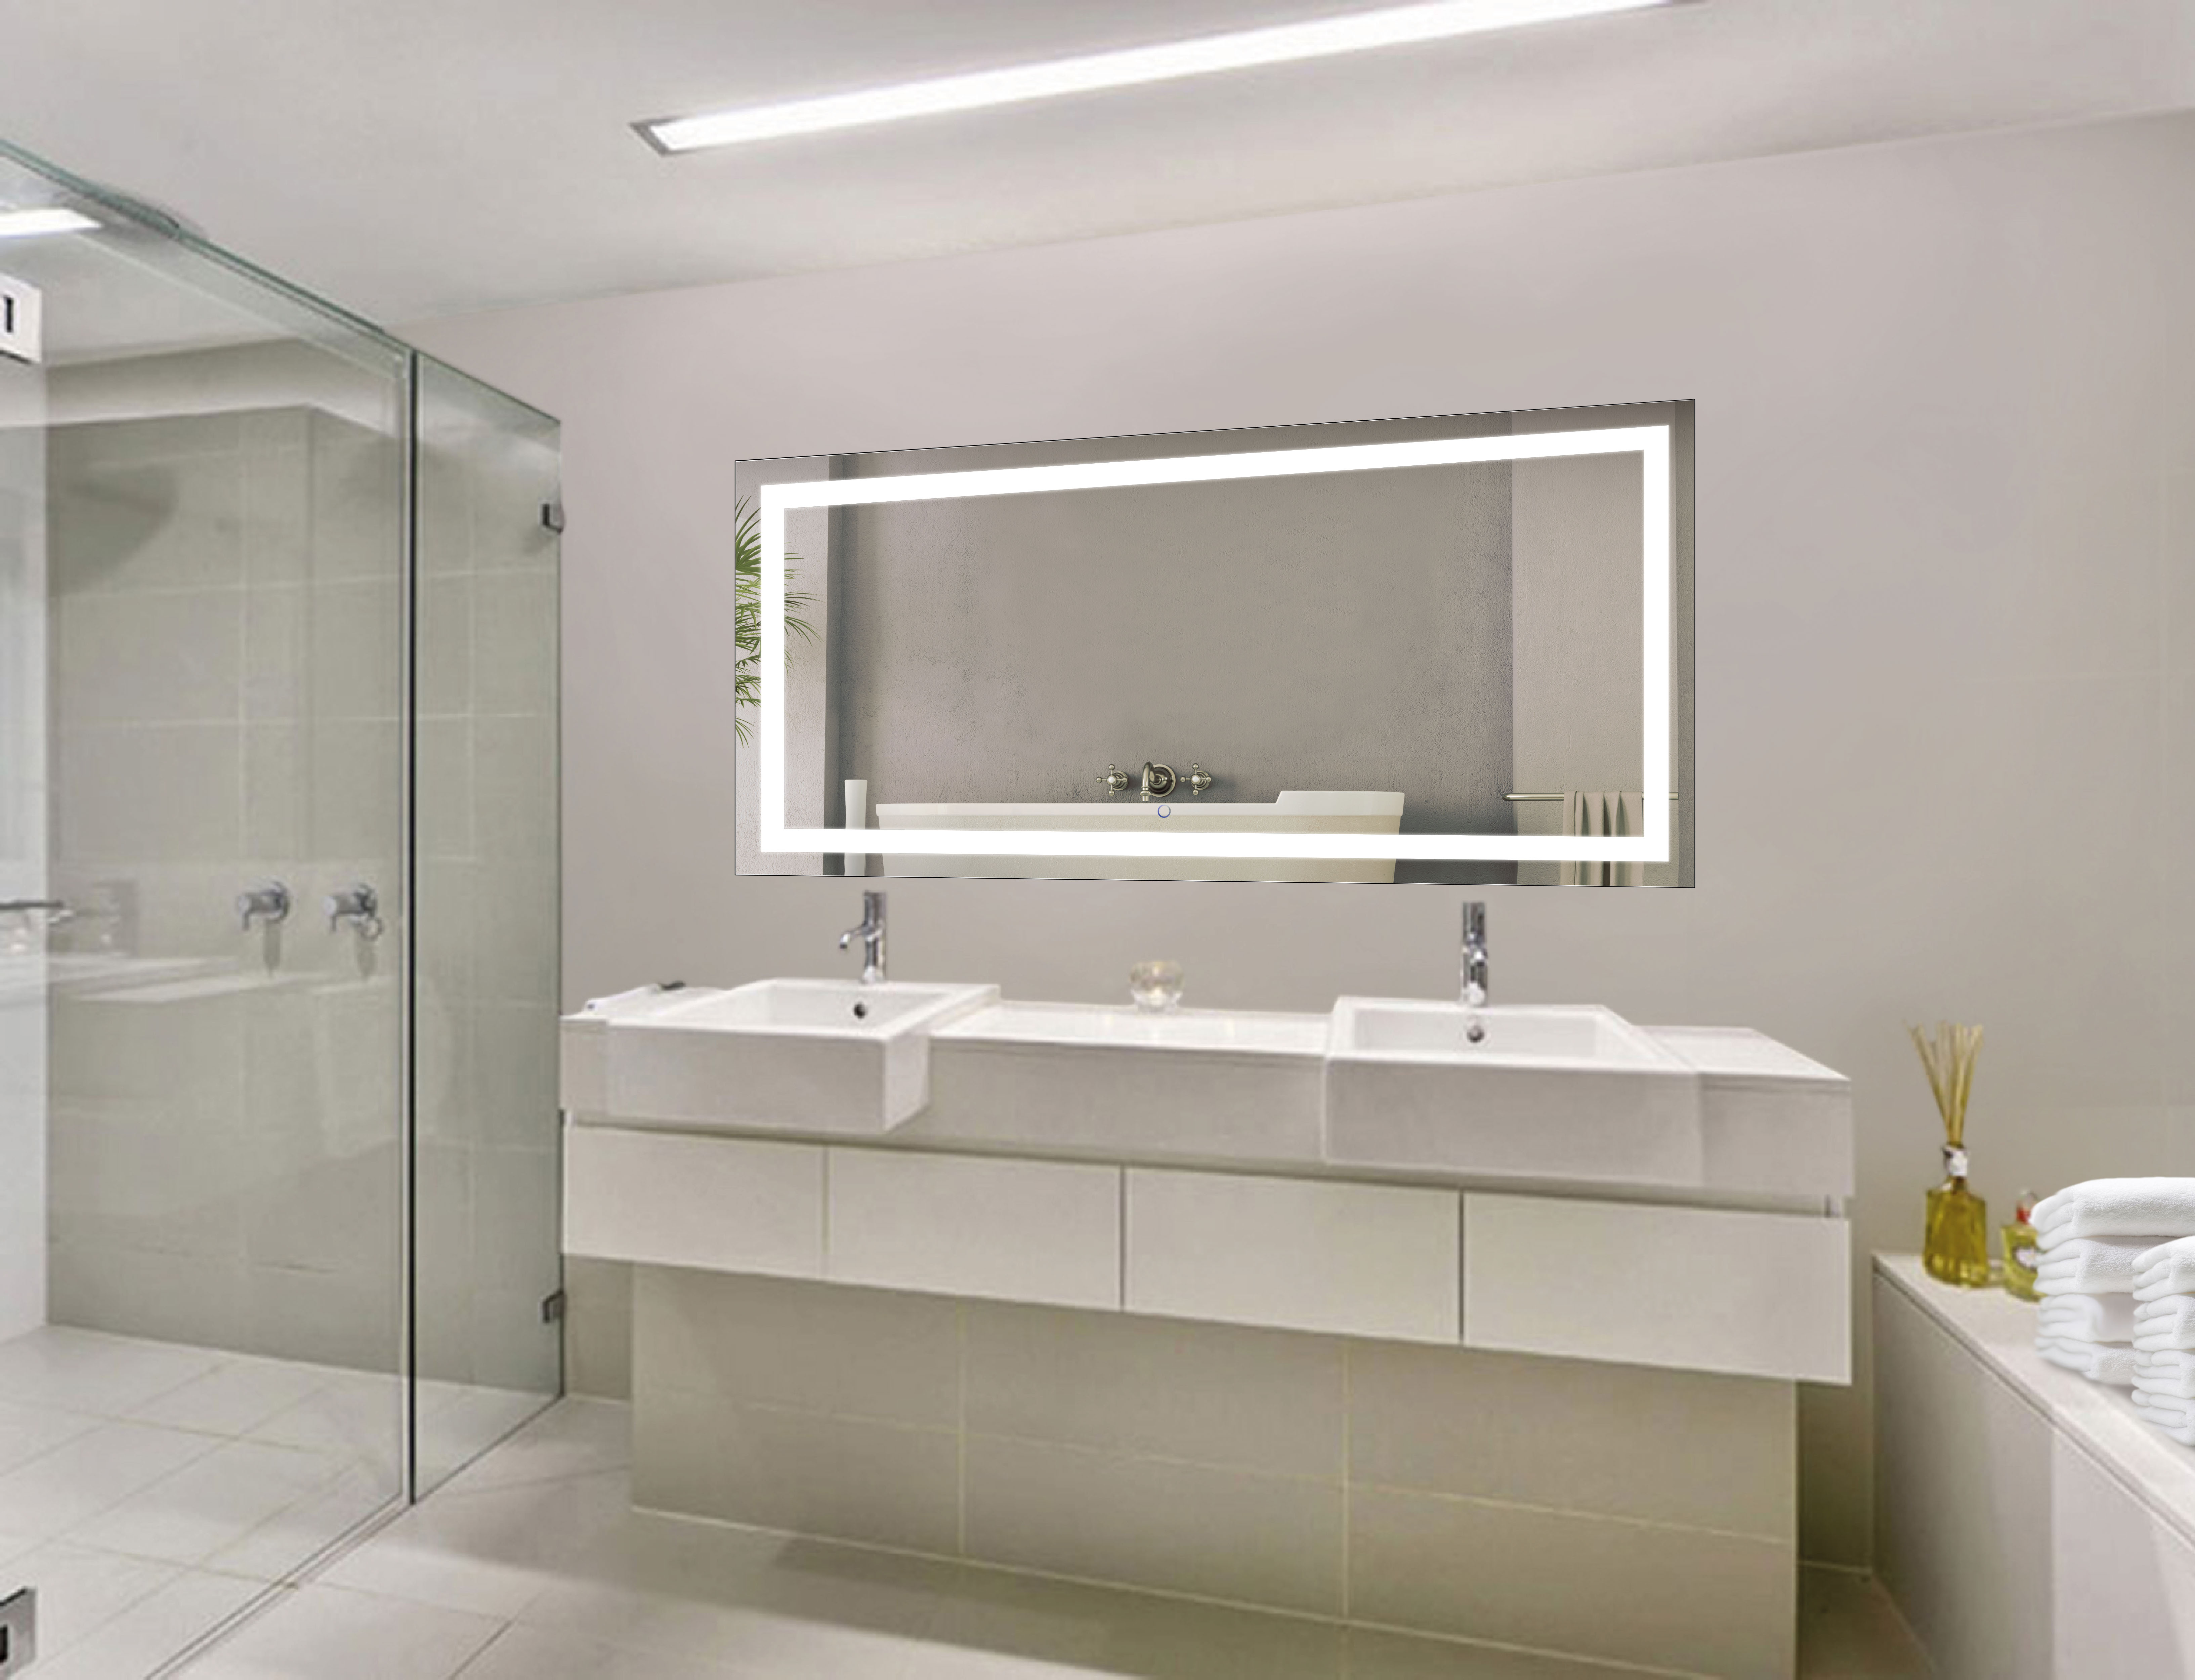 Bathroom Mirrors Floating Vanity Tile Wall